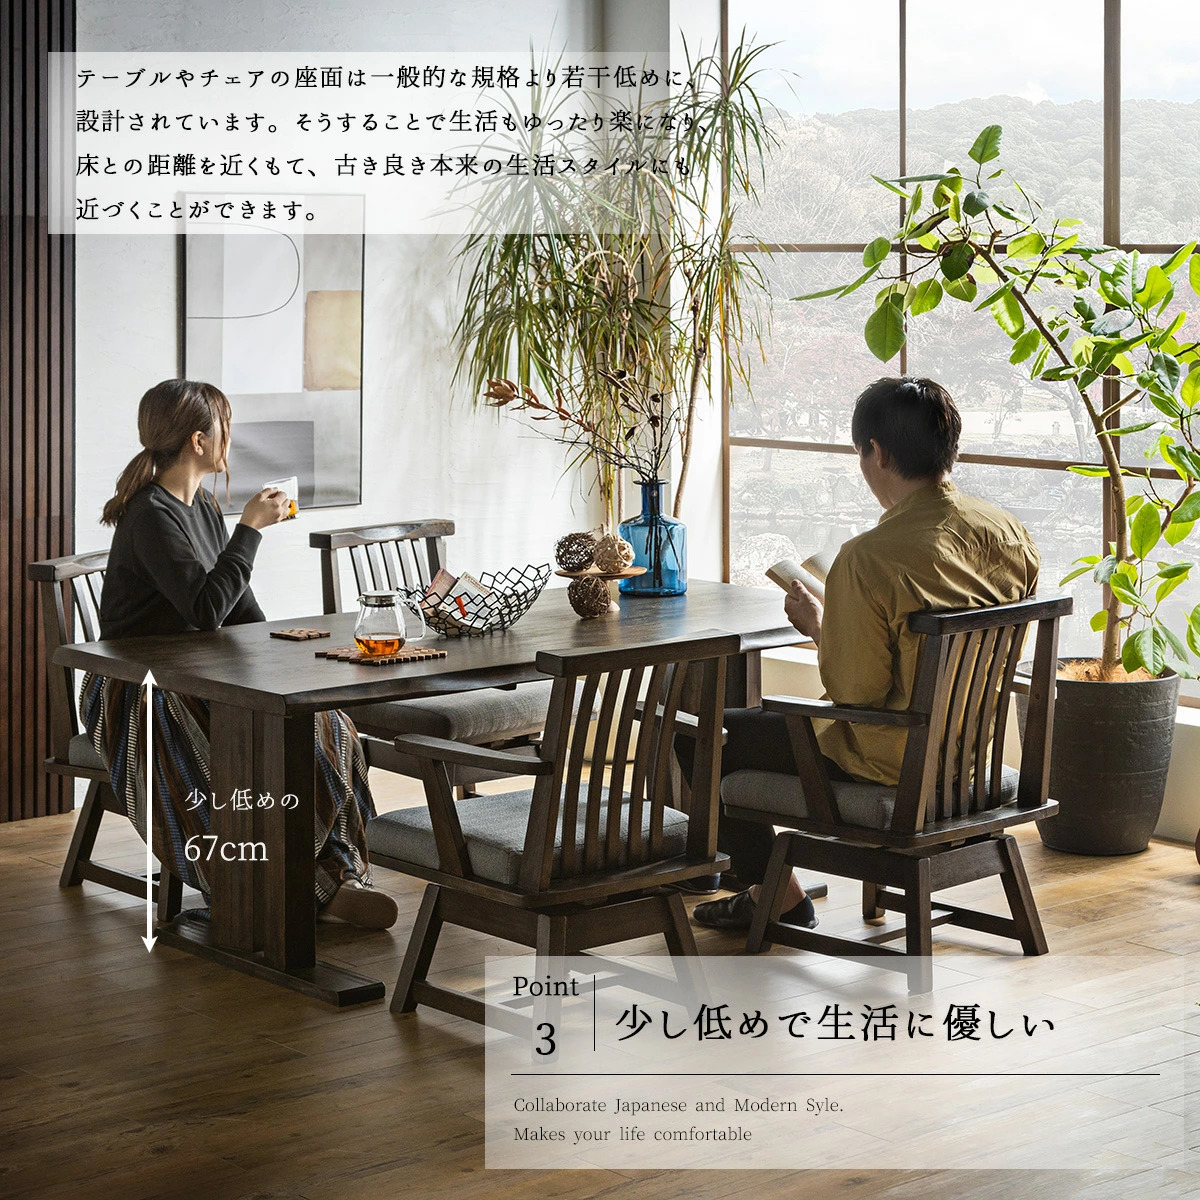 F00601_ダイニングセット 食卓 木目 北欧 日本 おしゃれ おすすめ ダイニングテーブル ダイニングチェア 天然木 5点セット シンプル 無垢  ナチュラル